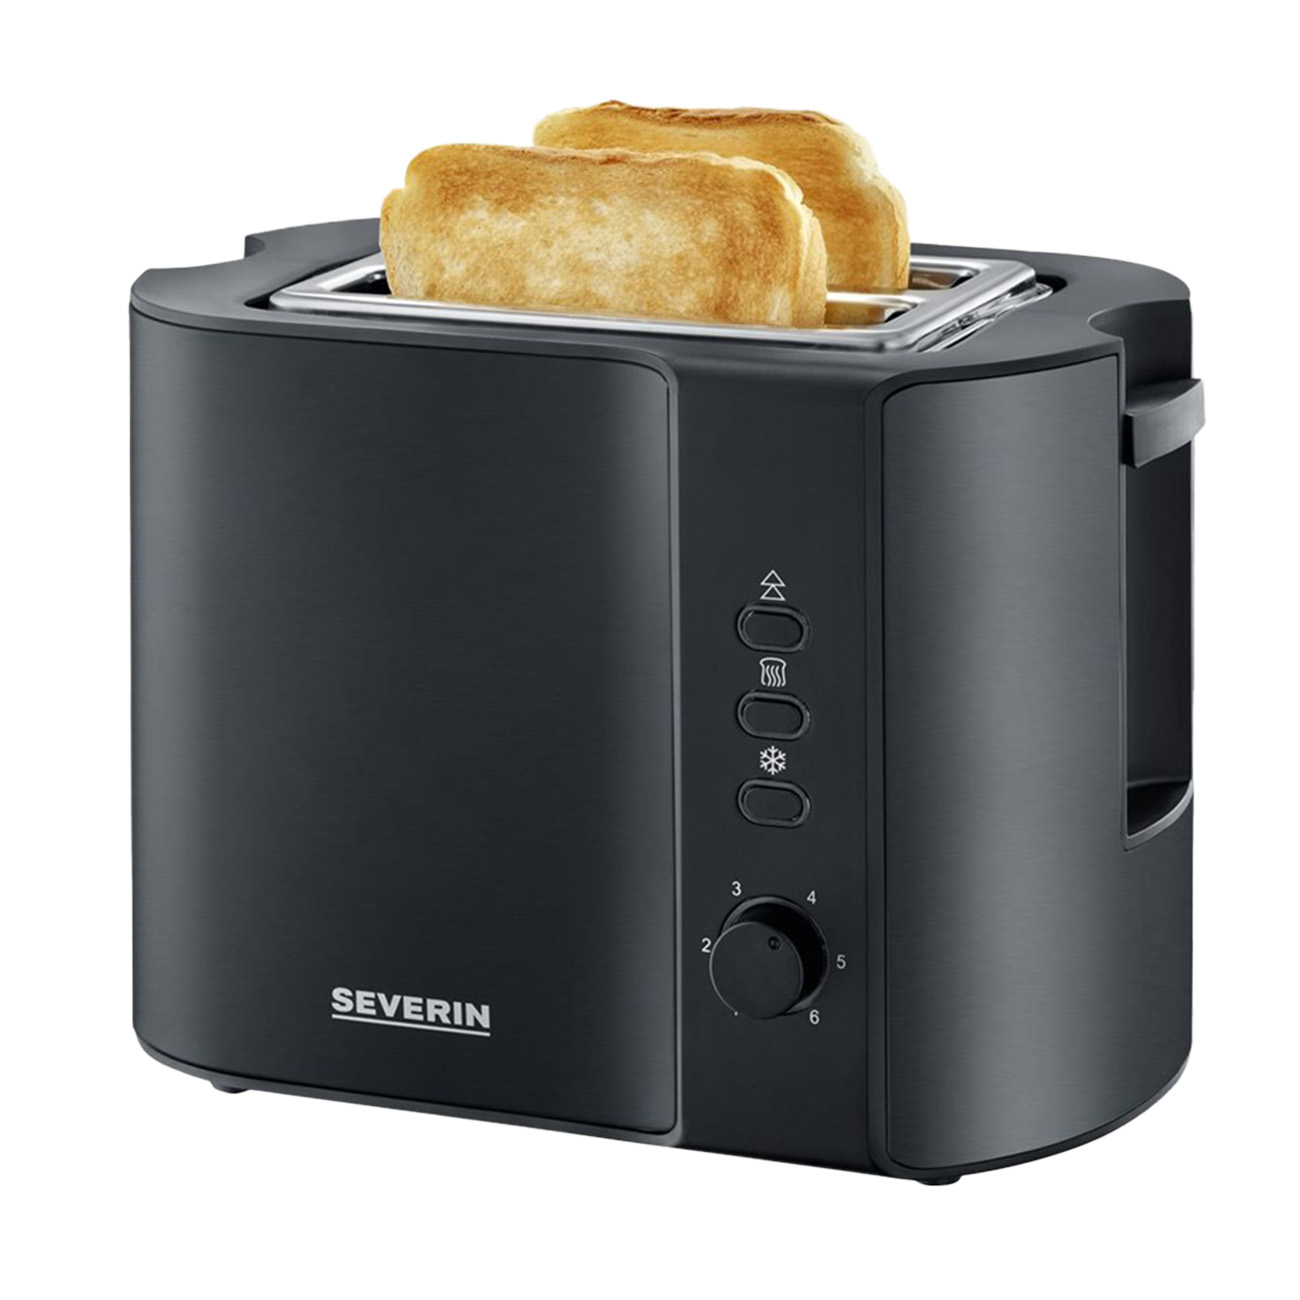 AT (800 SEVERIN 2) schwarz 9552 Watt, Schlitze: Toaster